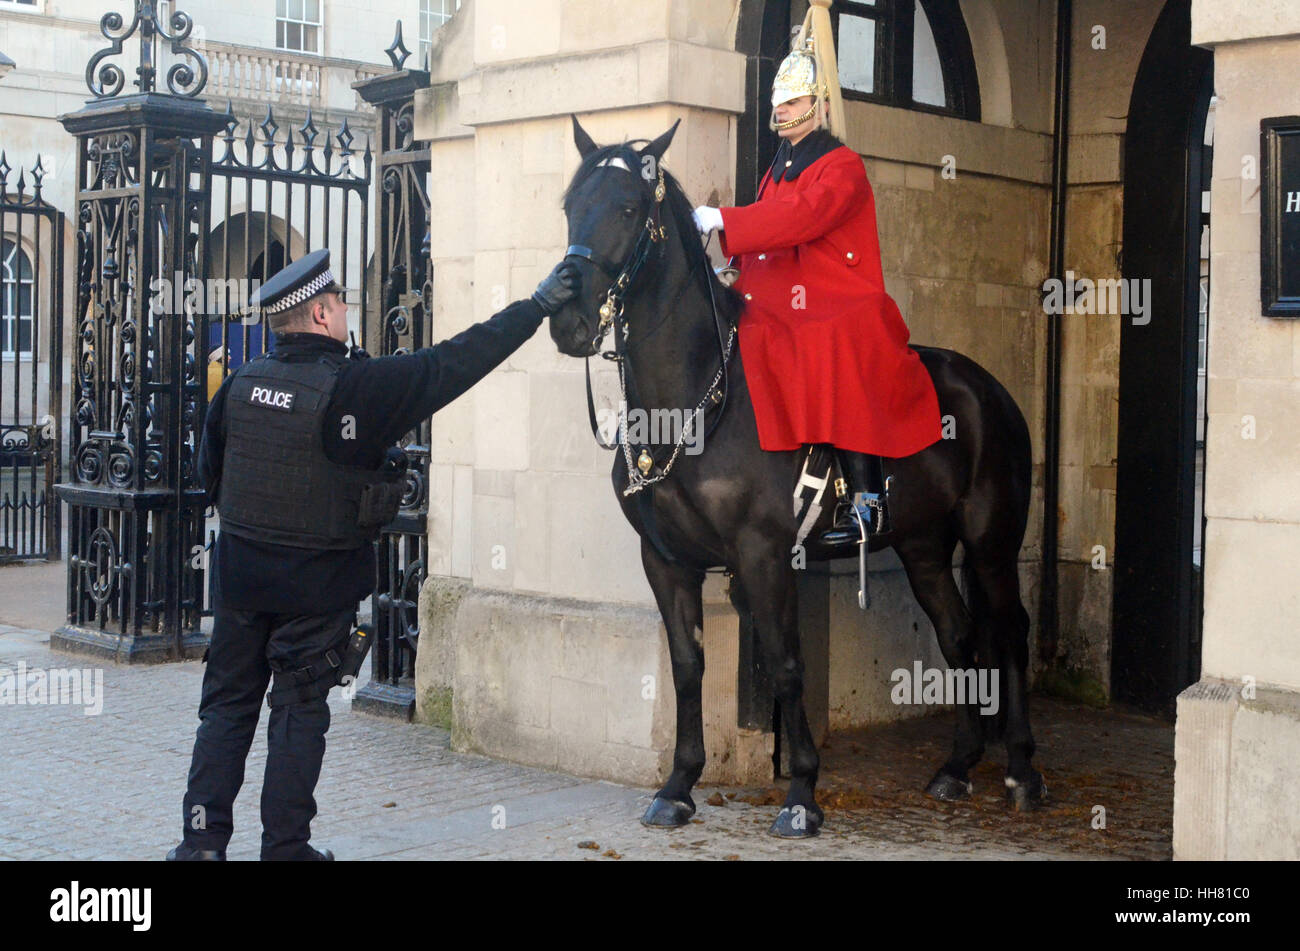 Londra, Regno Unito. Xvii gen, 2017. Picchietti Polceman cavallo di cavalleria sul naso alla calma a Horseguard Parade di Whitehall. Posizione soleggiata e fredda giornata a Londra. Credito: JOHNNY ARMSTEAD/Alamy Live News Foto Stock